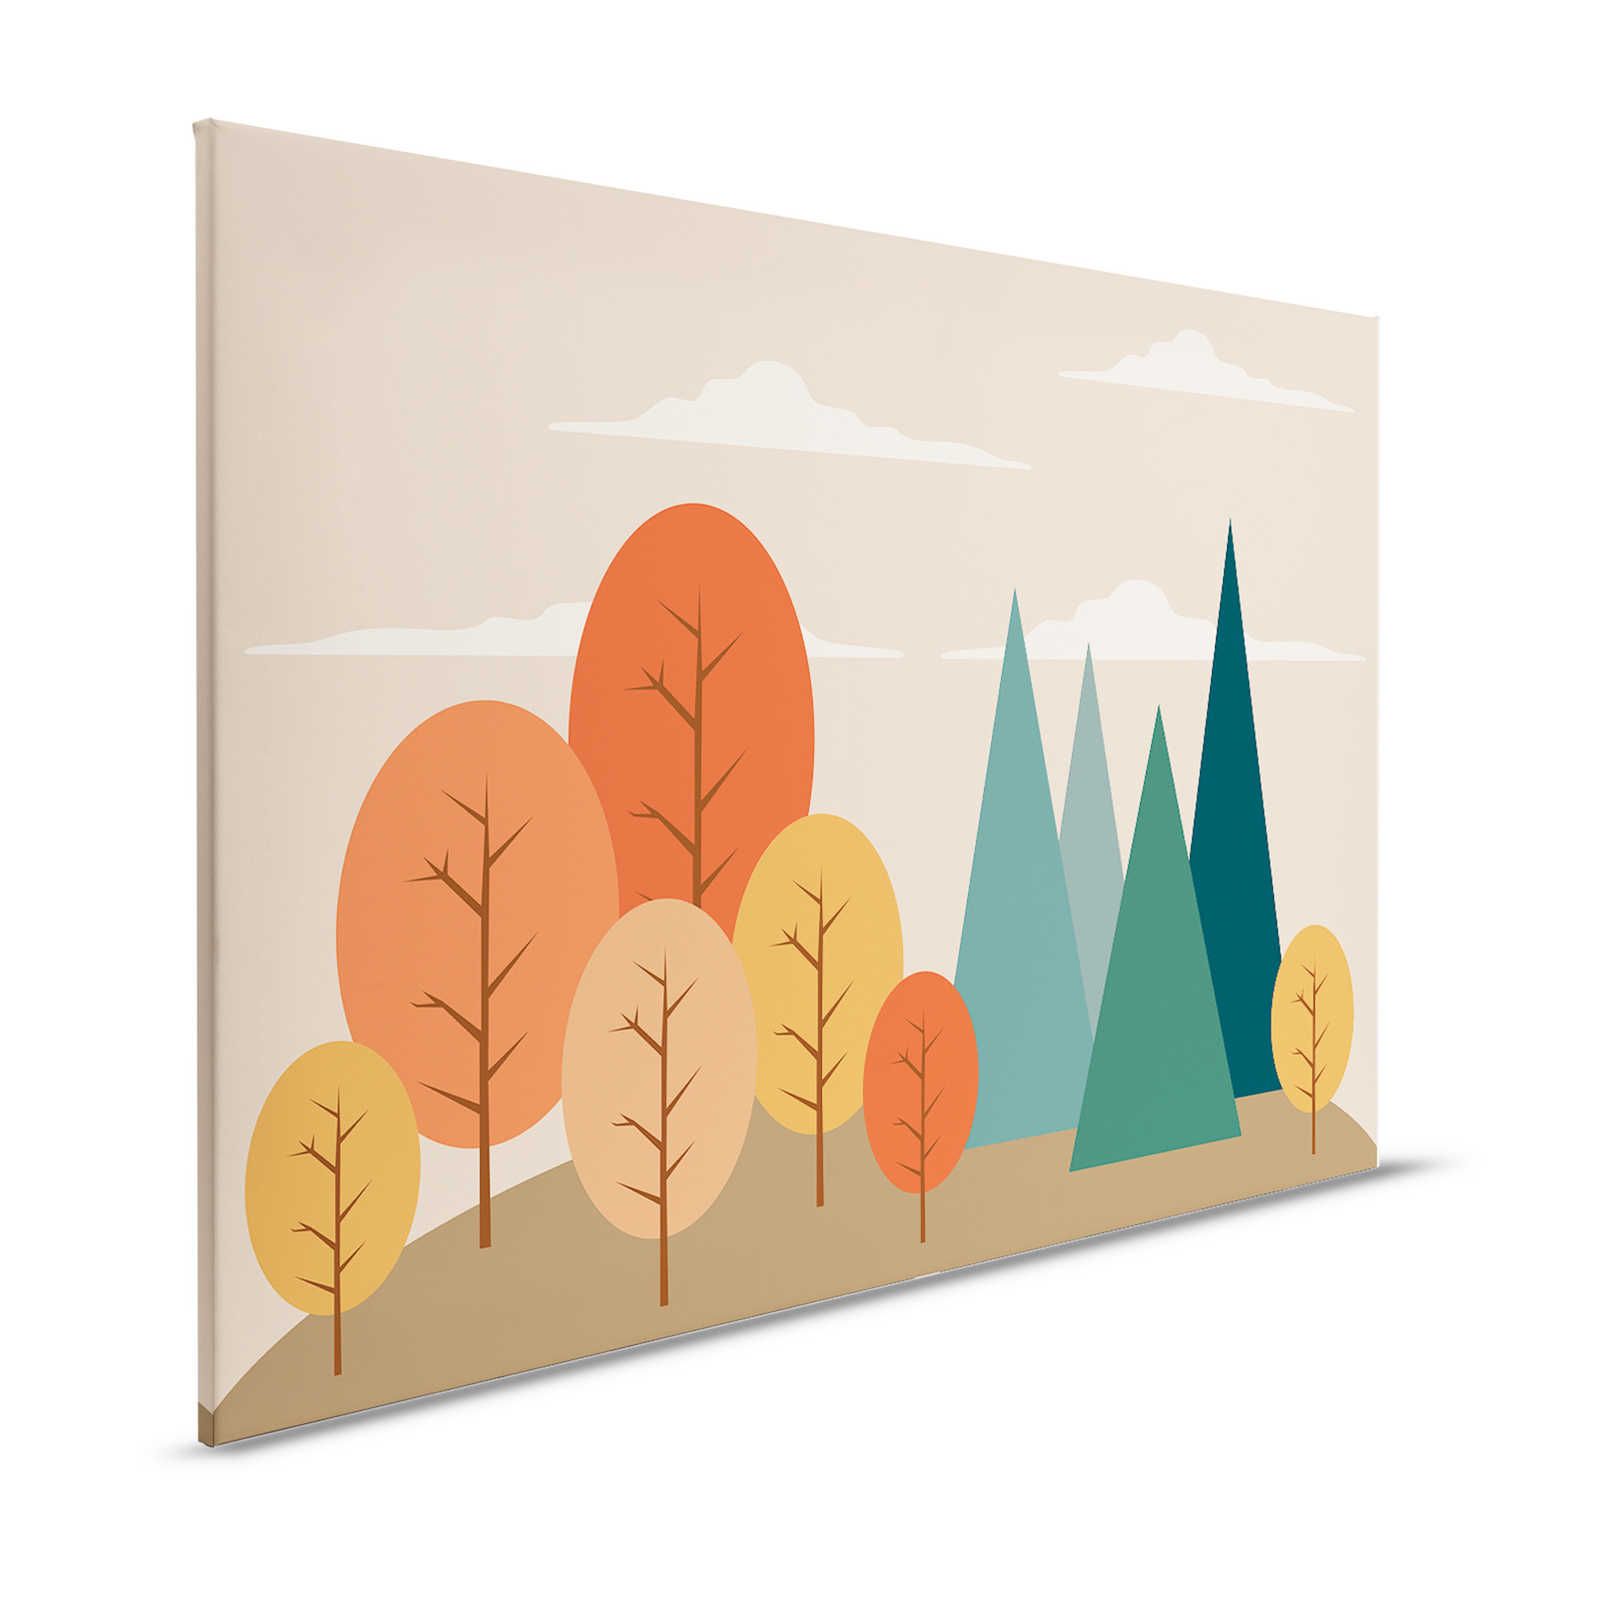 Leinwand Zauberwald mit geometrischen Formen – 120 cm x 80 cm
